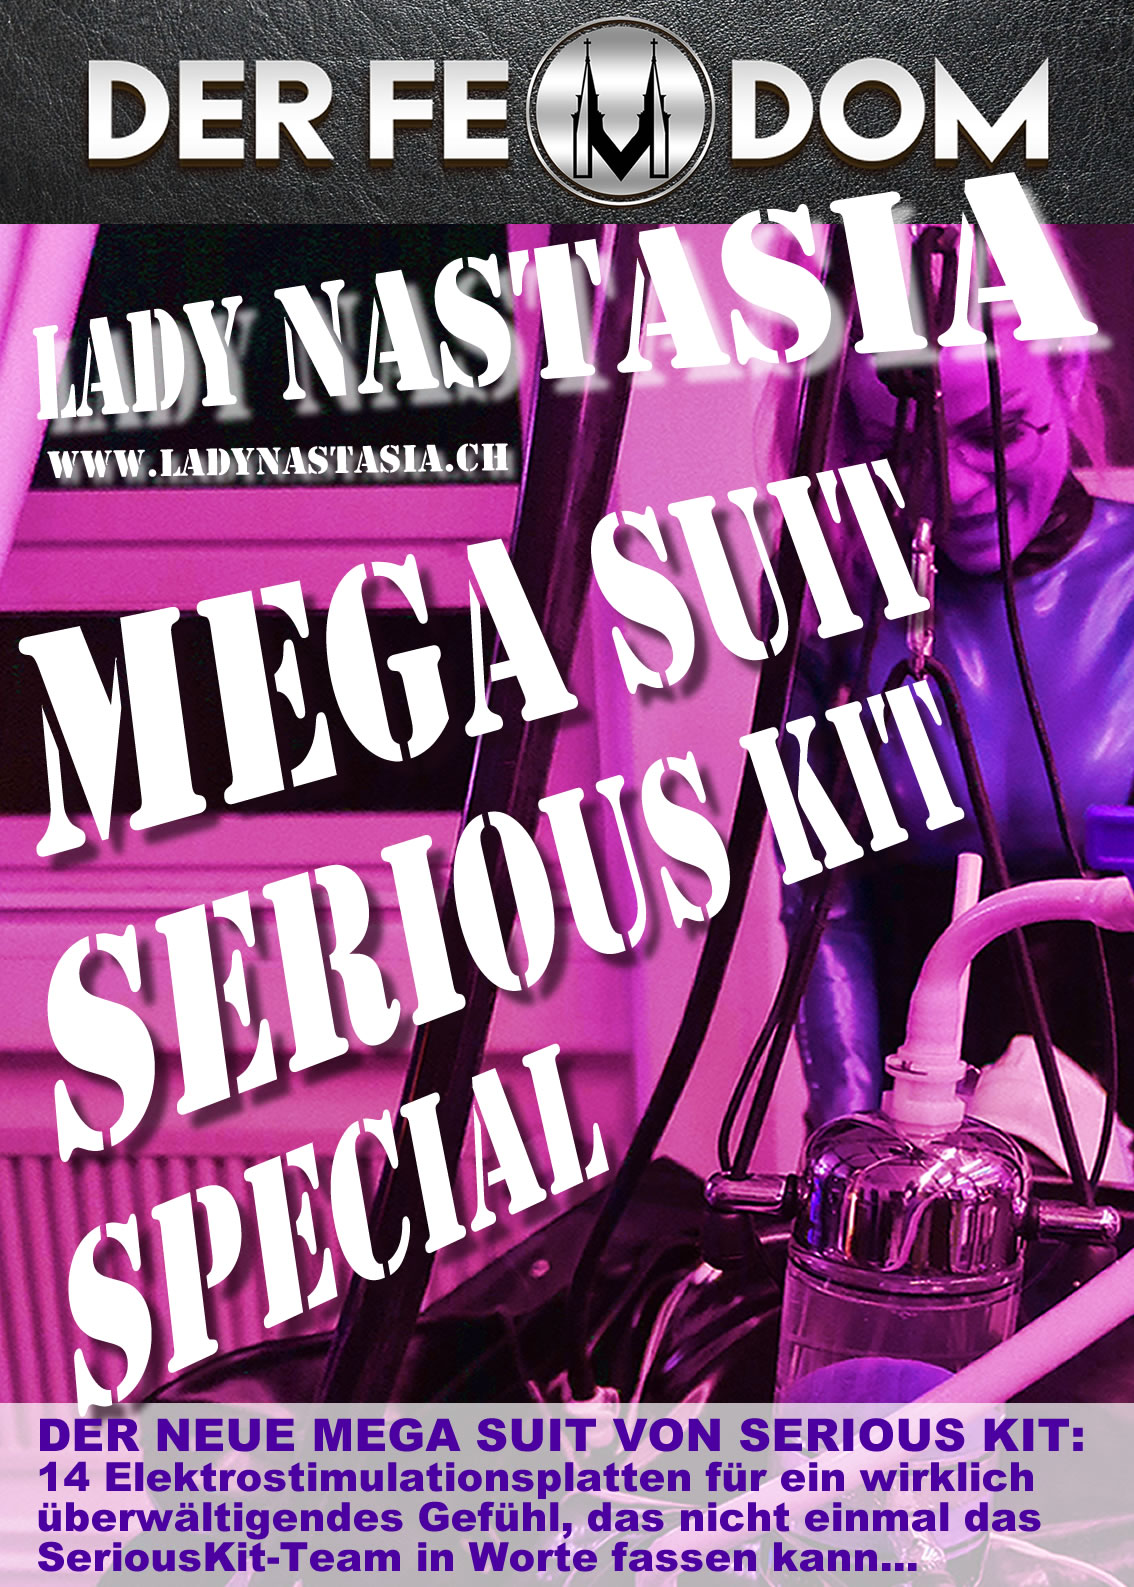 Rubber Tornado Lady Nastasia mit Mega Suit Serious Kit im grössten und besten BDSM Domina Studio der Schweiz